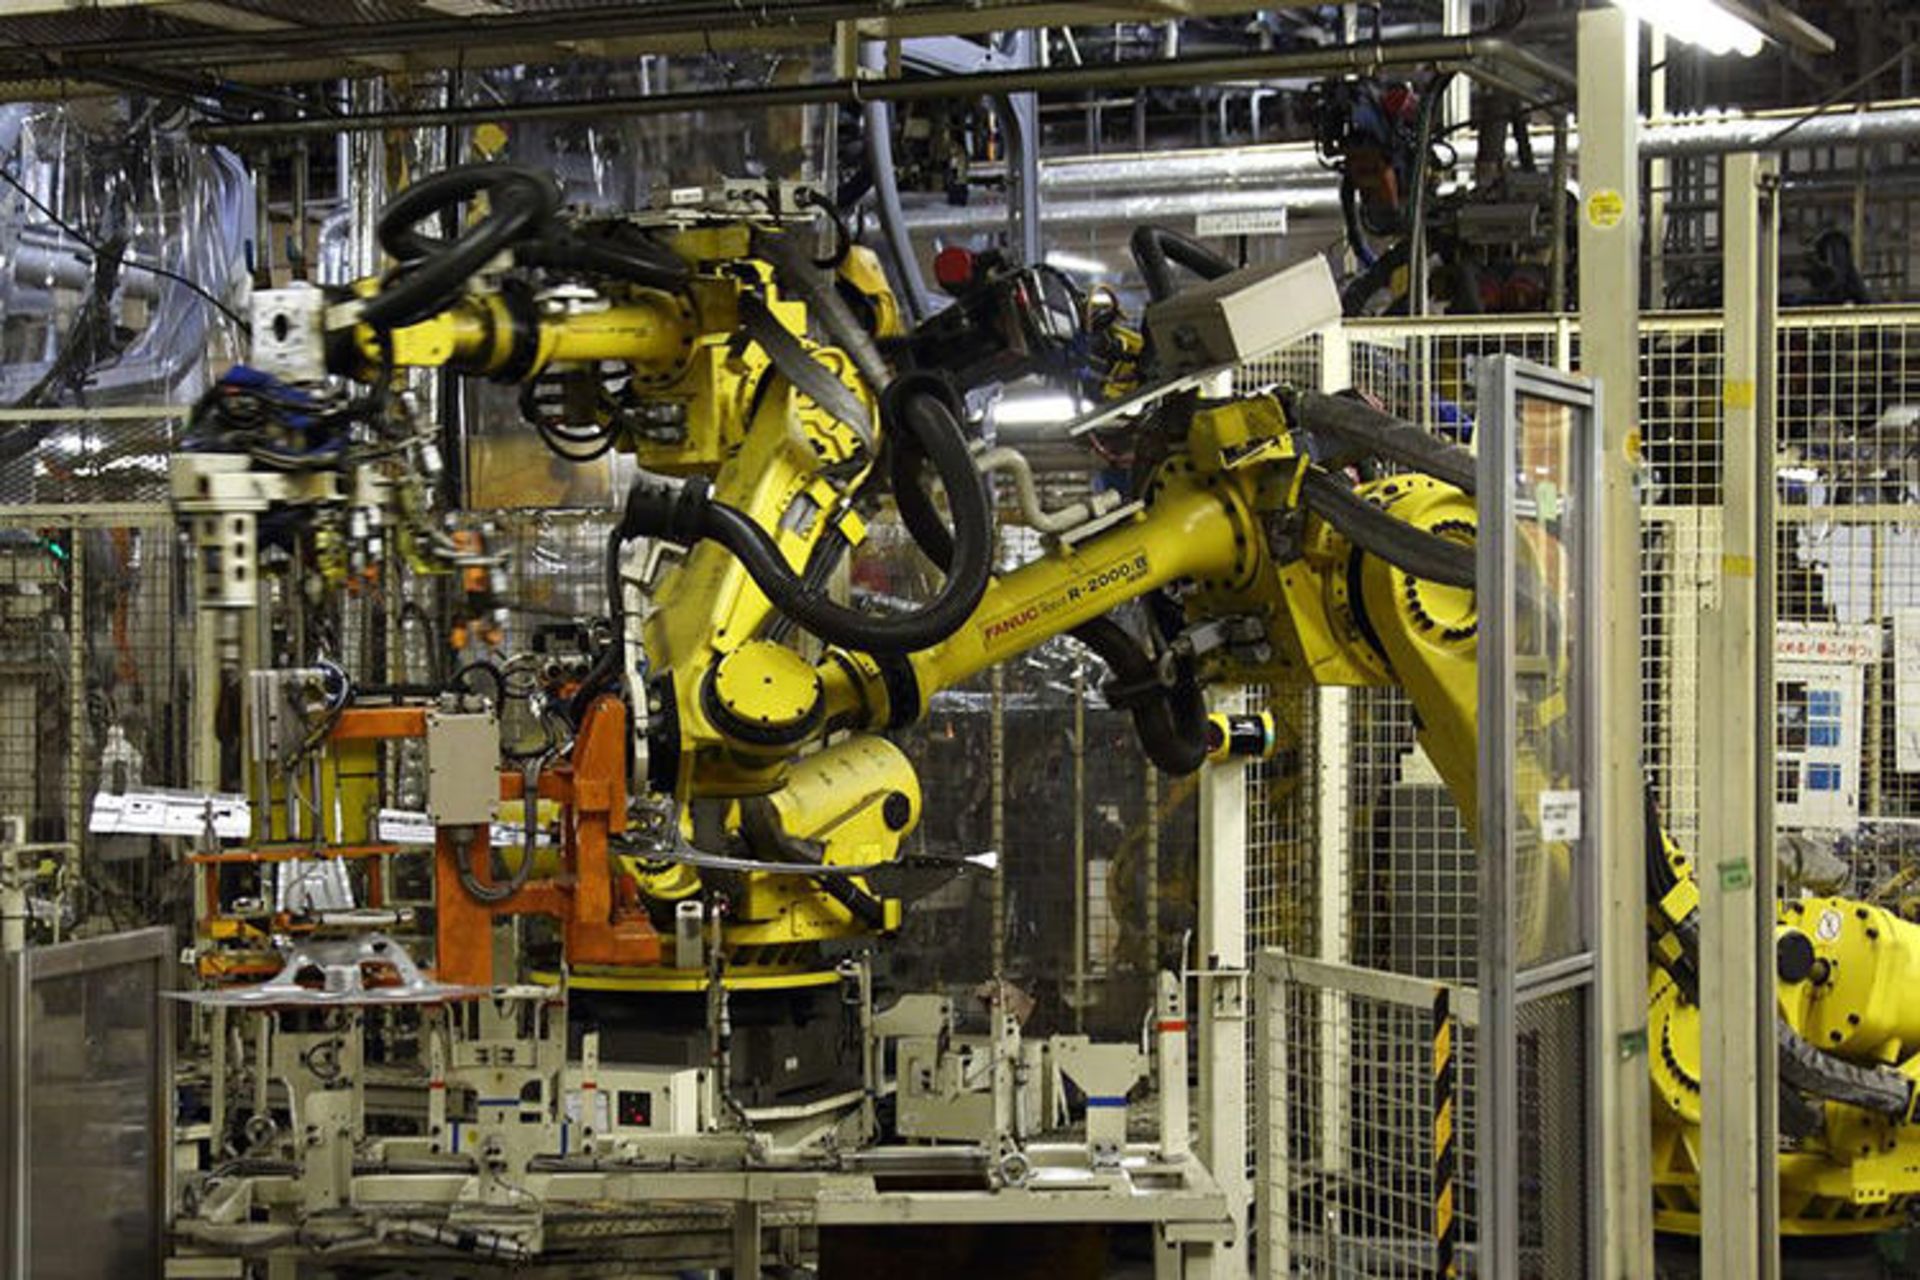 مرجع متخصصين ايران ربات صنعتي ژاپني / Japanese Industrial Robot